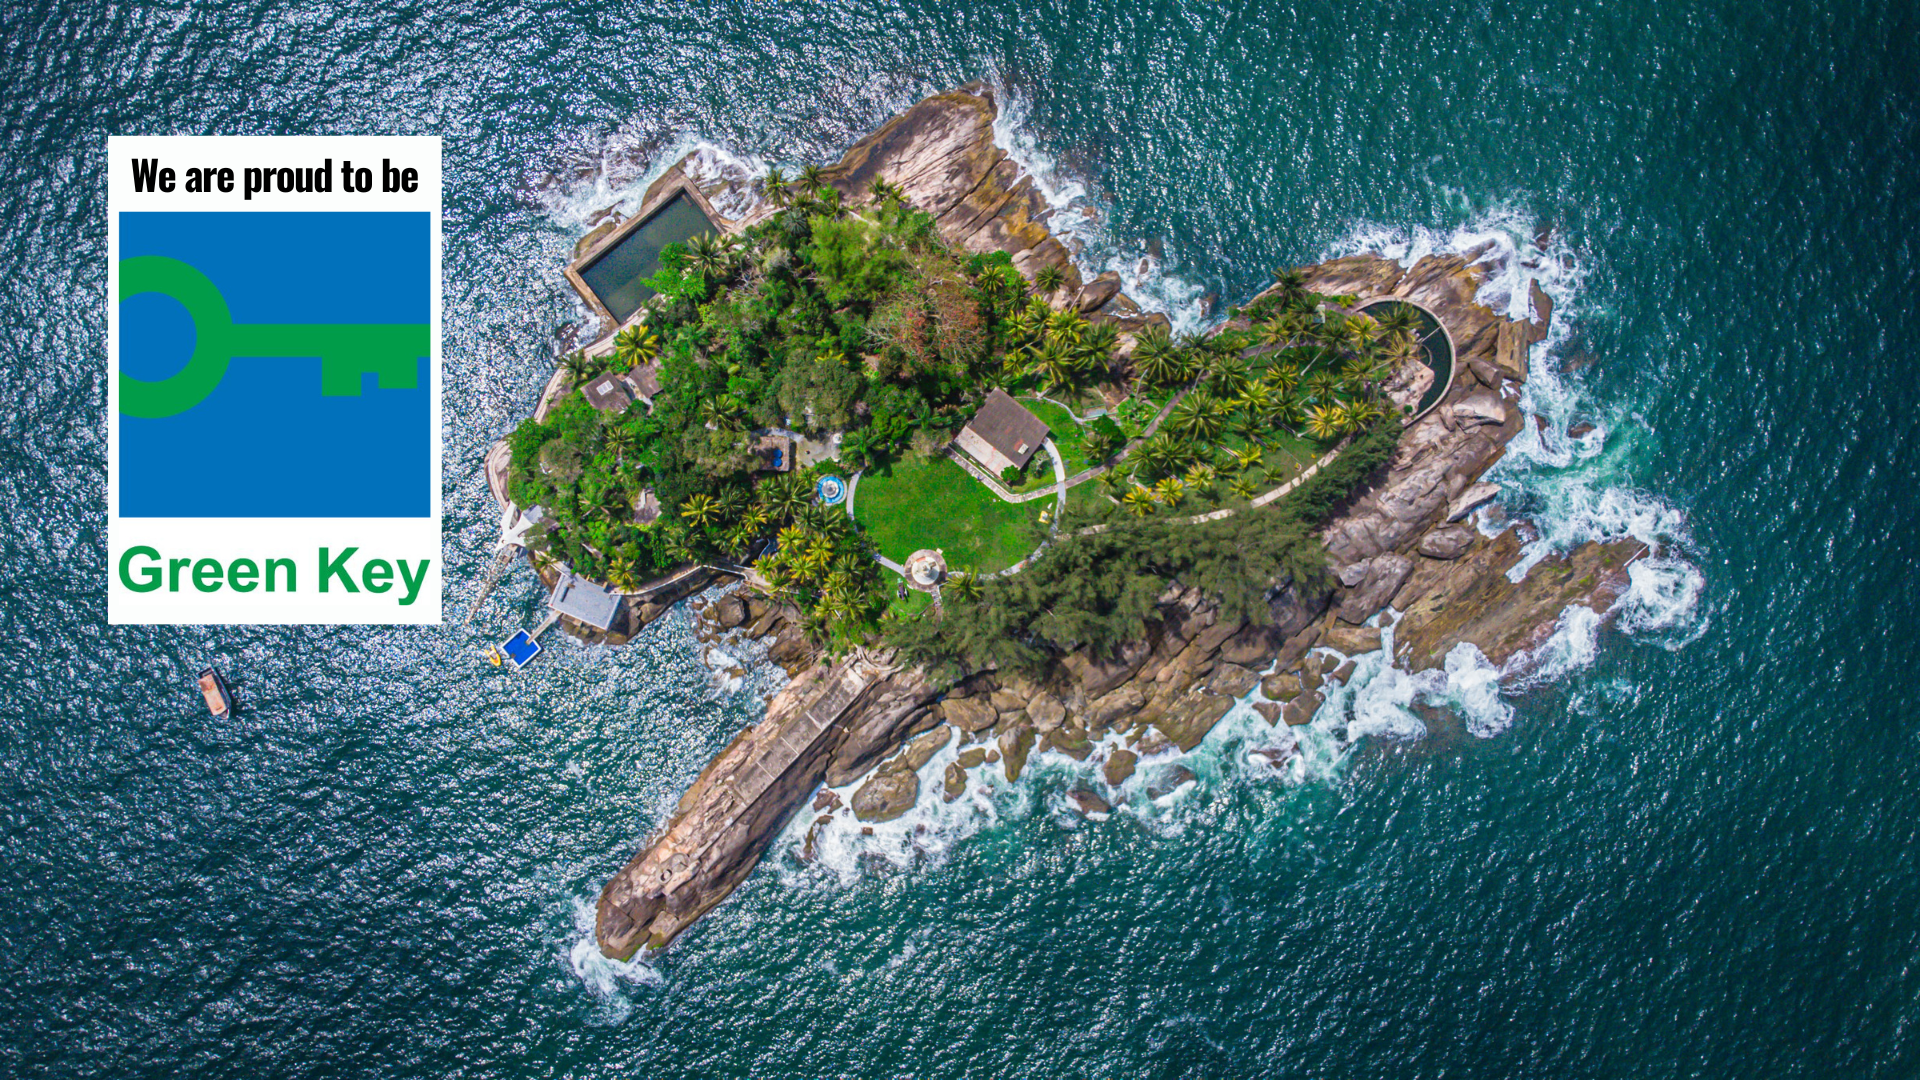 Ilha dos Arvoredos conquista o selo Green Key e se torna o primeiro atrativo turístico certificado nas Américas